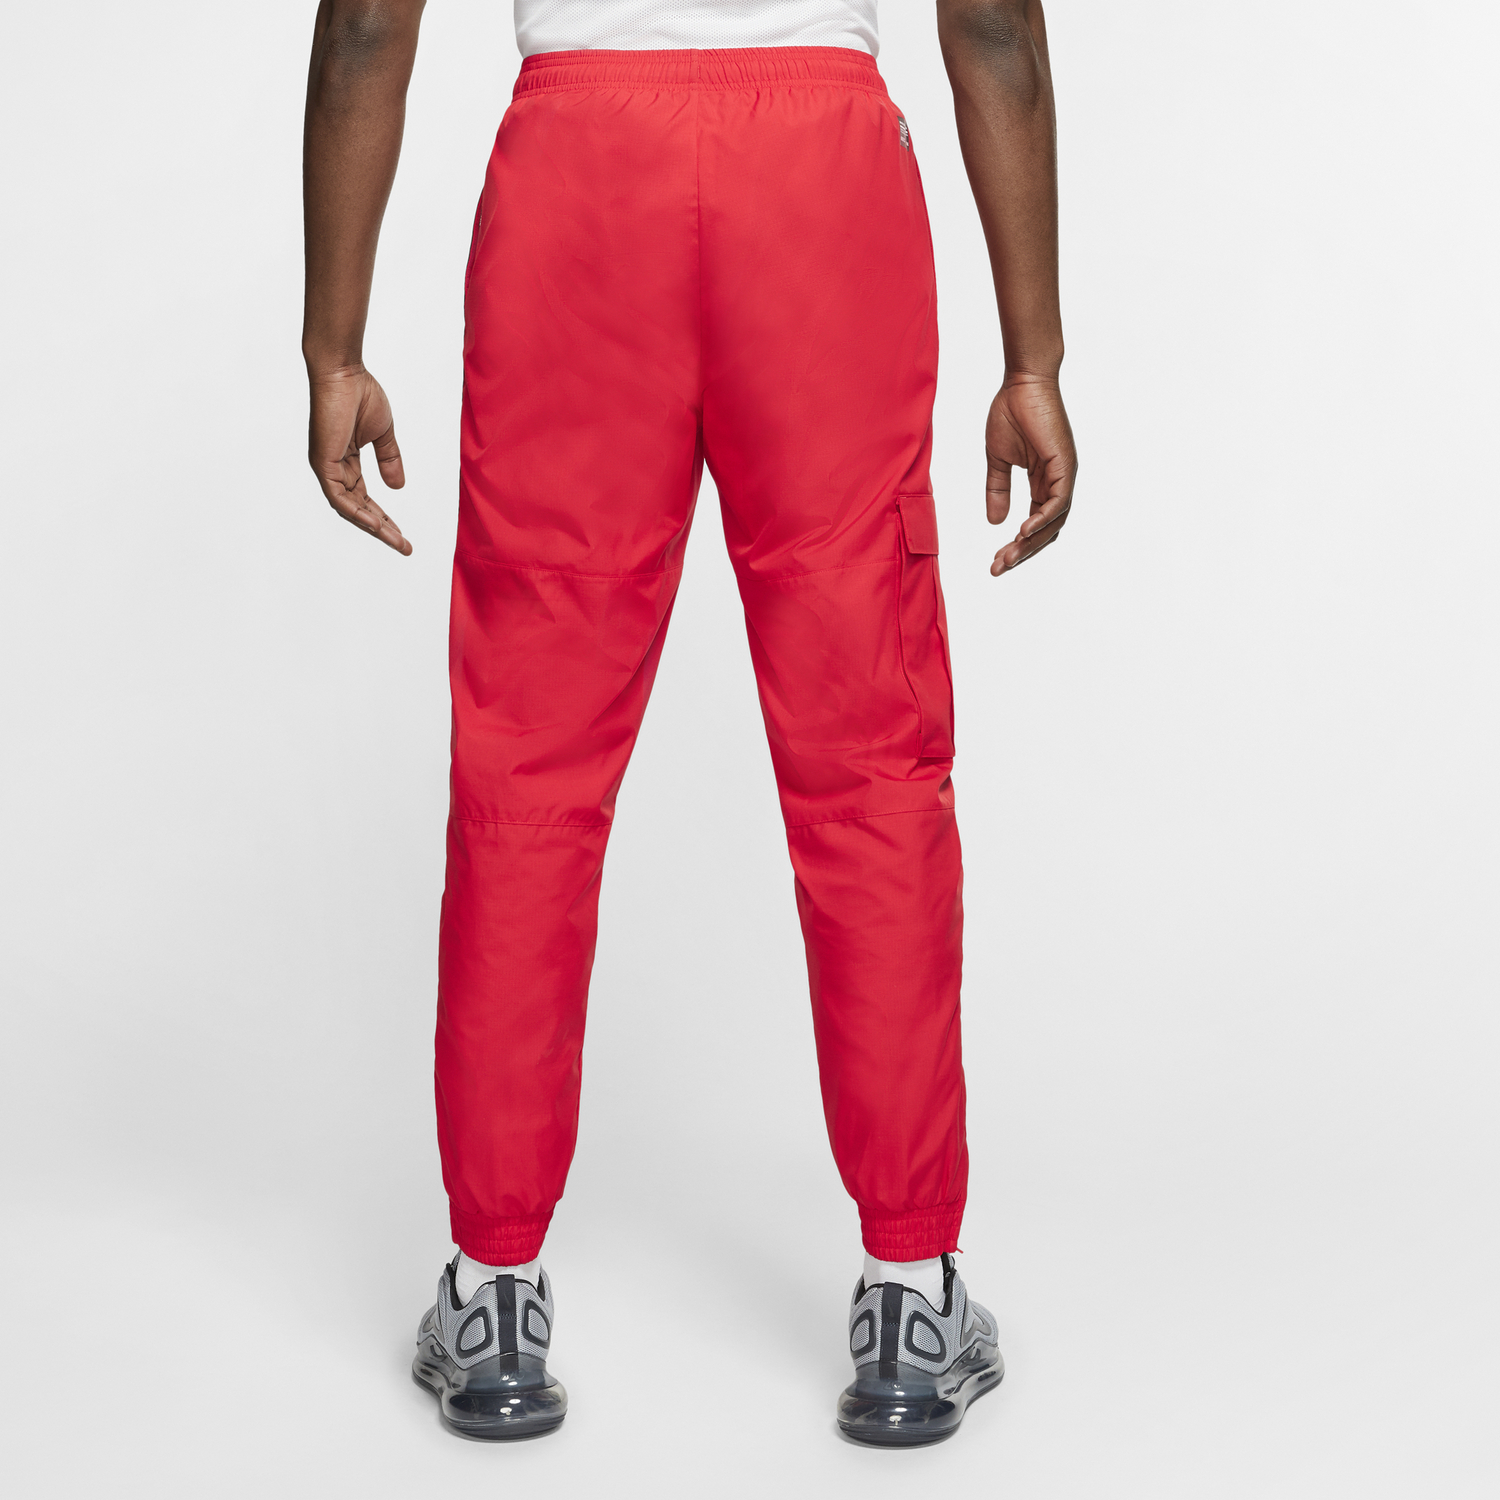 Pantalon survêtement Nike F.C. microfibre rouge sur Foot.fr